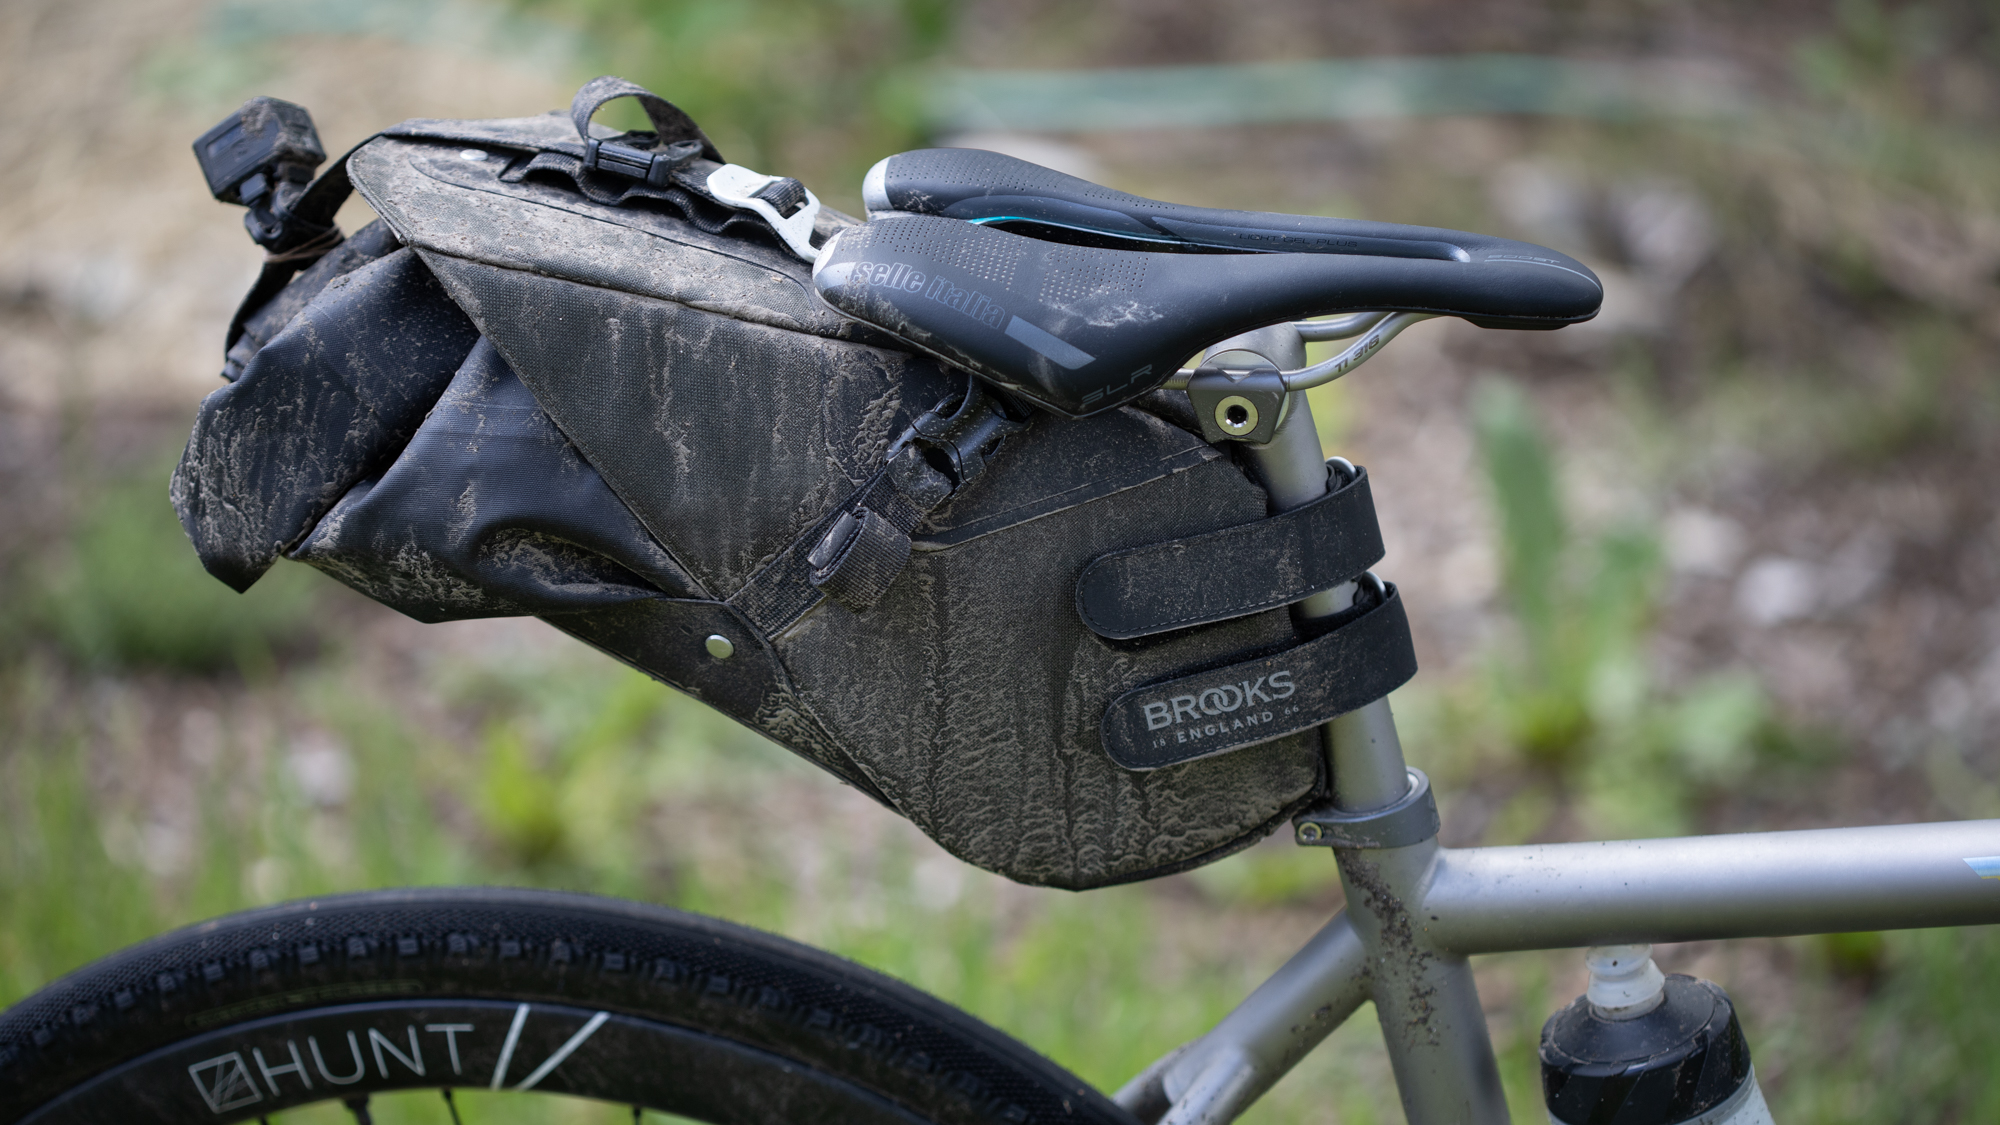 Leather Tool Bag Bicycle Saddle Bag Handcrafted Bike Bag CHARCOAL BLACK